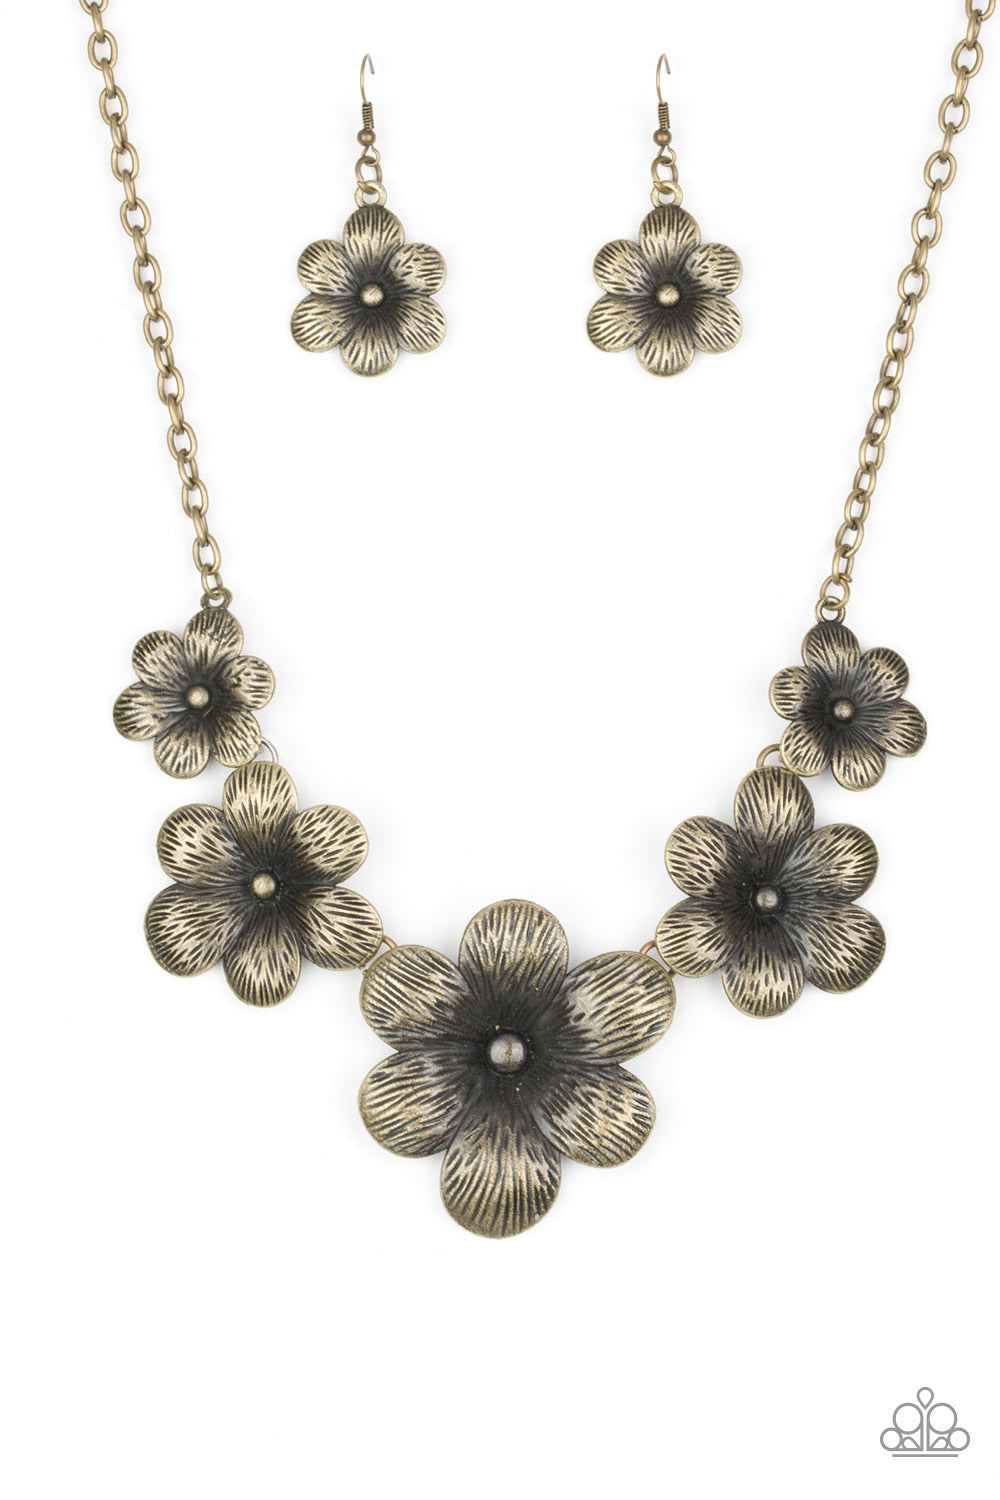 Brushed shimmer, lifelike brass flower necklace.